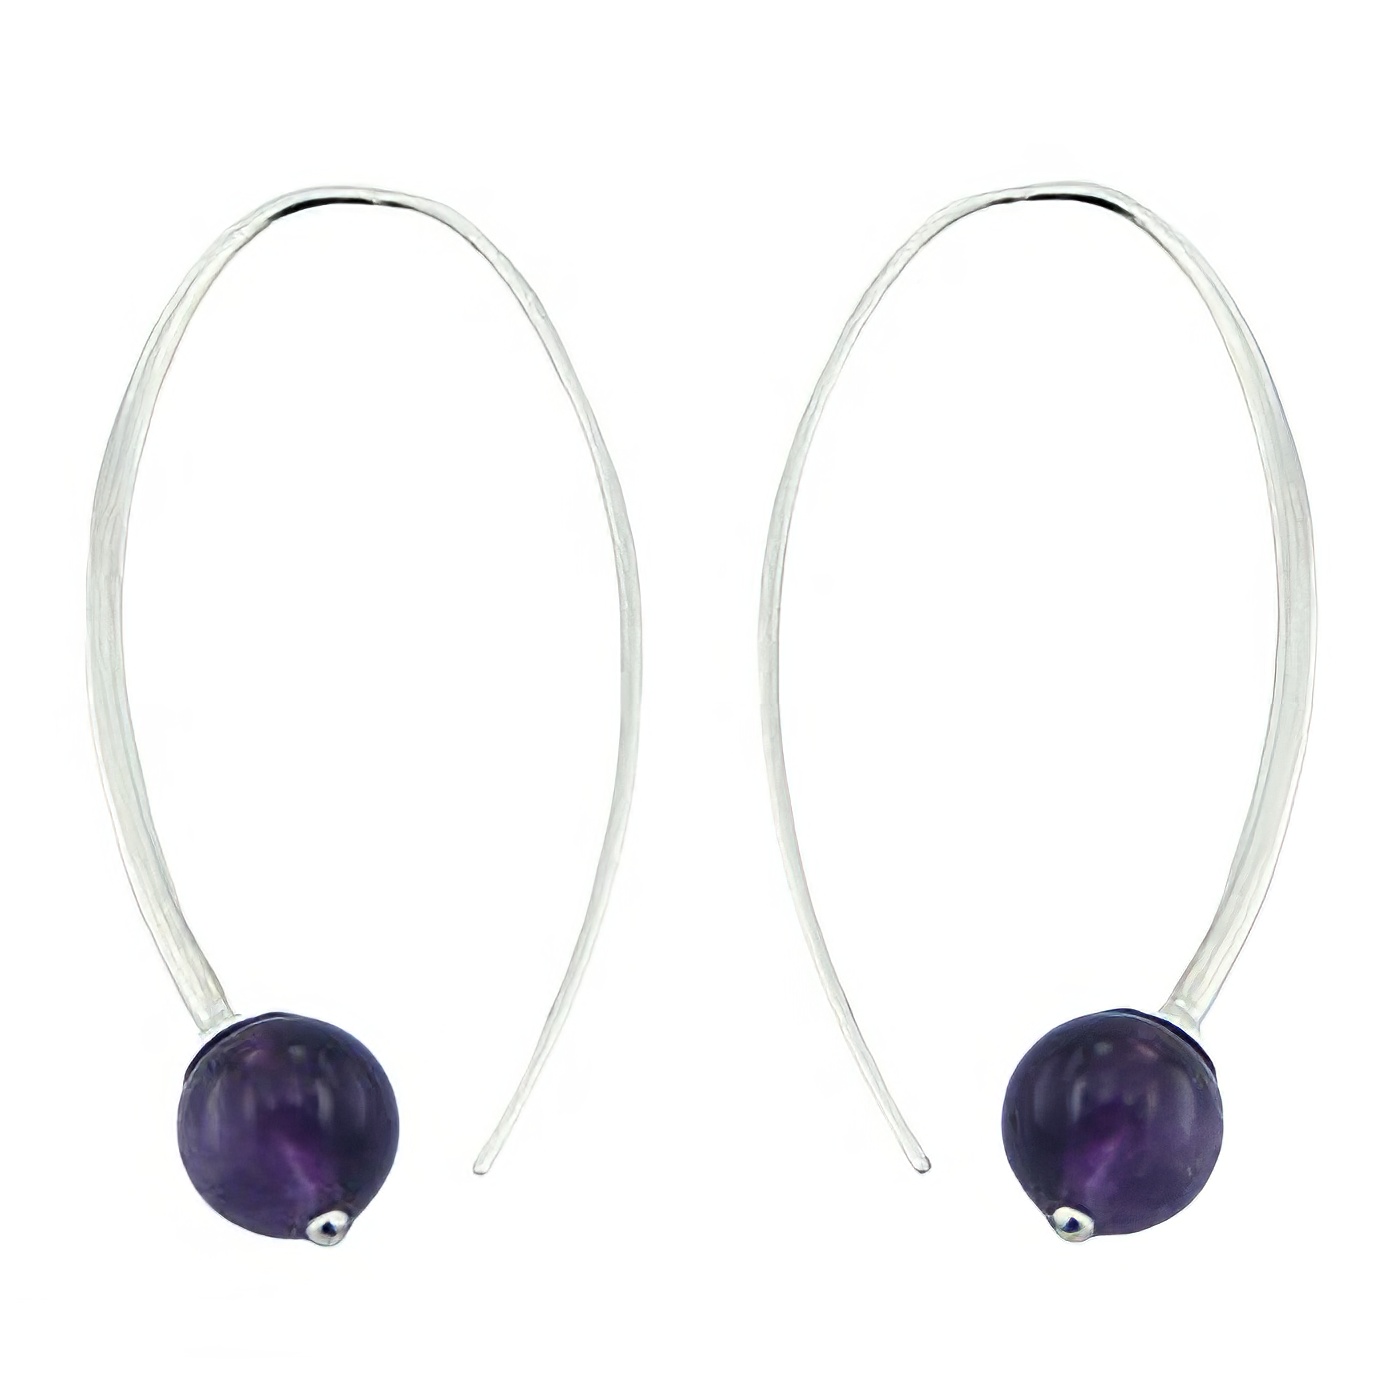 Violet amethyst beads silver earrings 